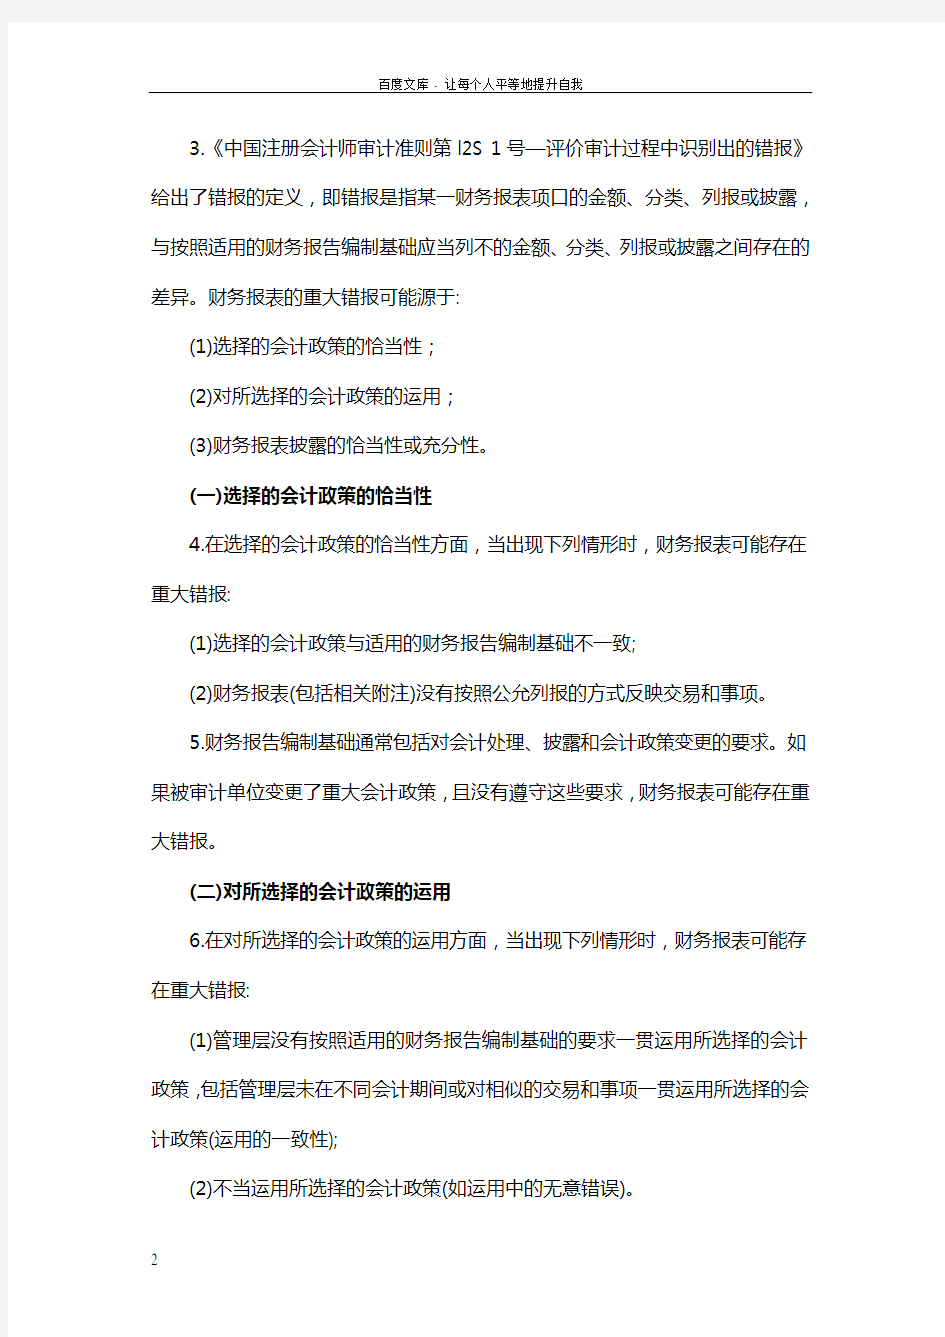 中国注册会计师审计准则第1502号—在审计报告中发表非无保留意见指南